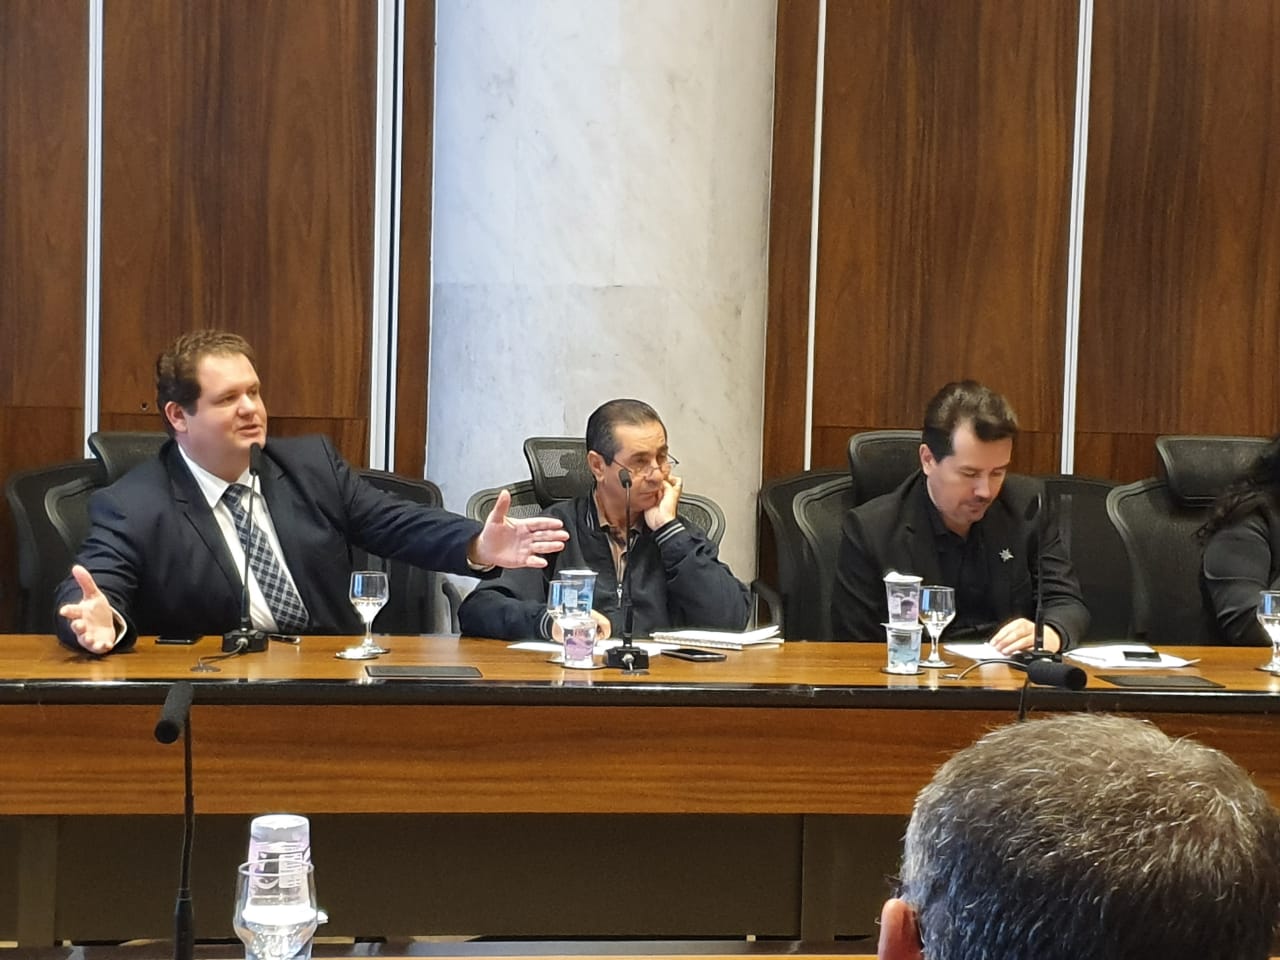 Wanderci Polaquini informa como foi a 3ª reunião de negociação salarial no Palácio Iguaçu